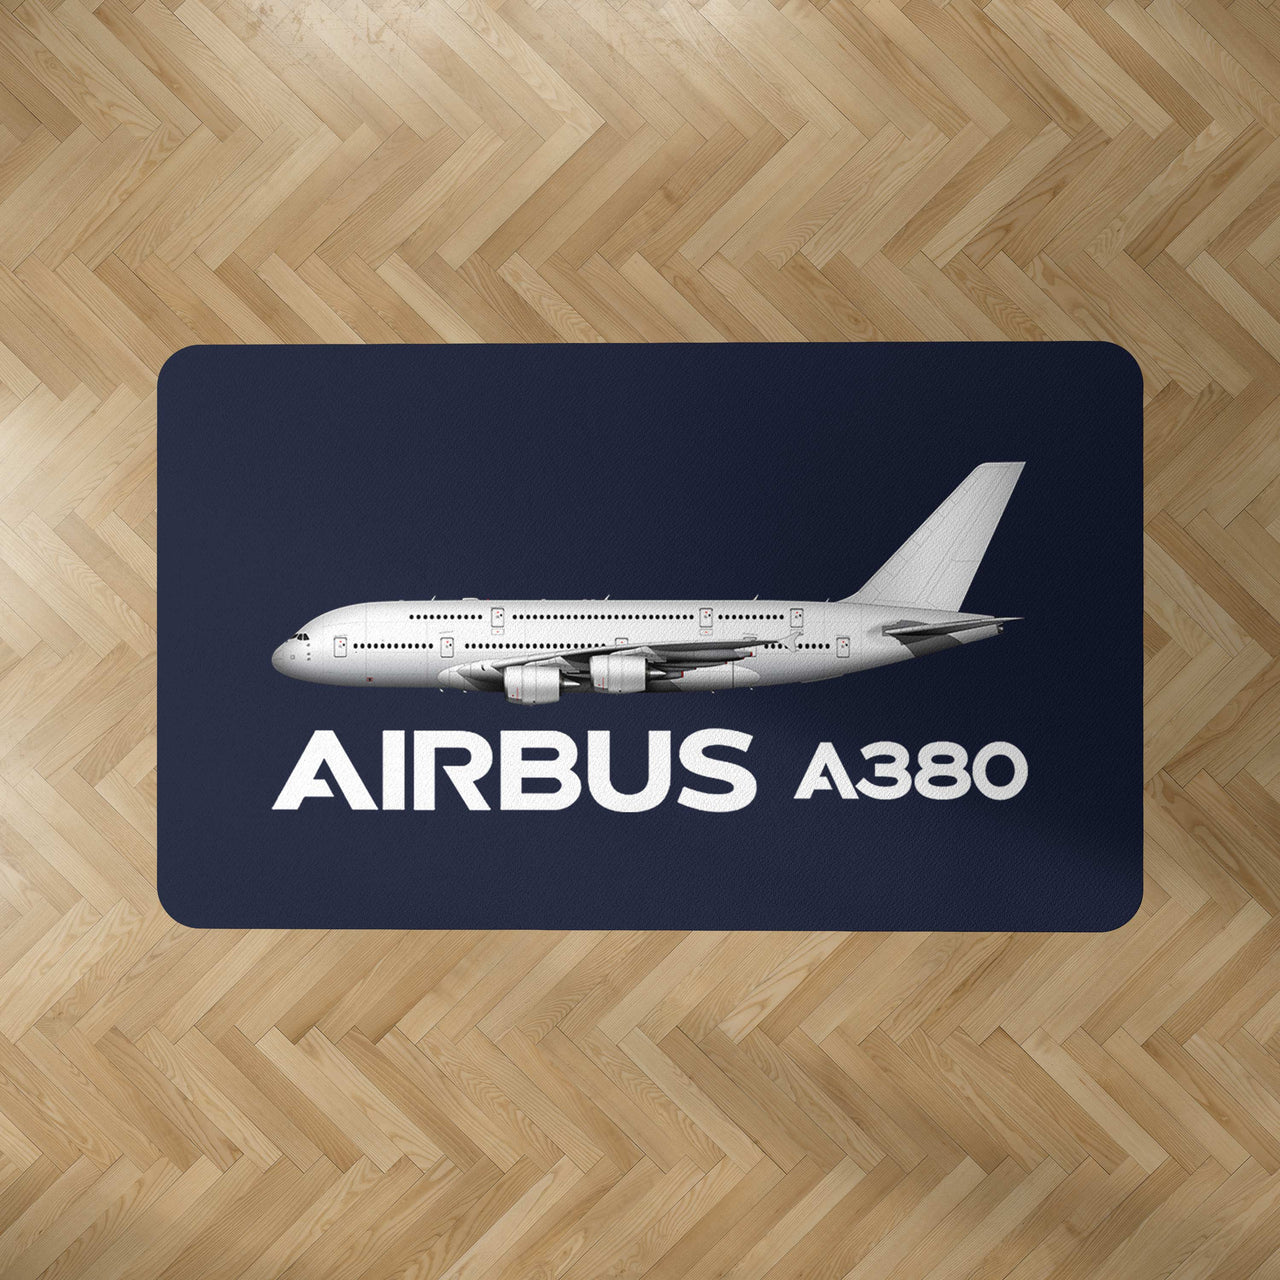 The Airbus A380 Designed Carpet & Floor Mats